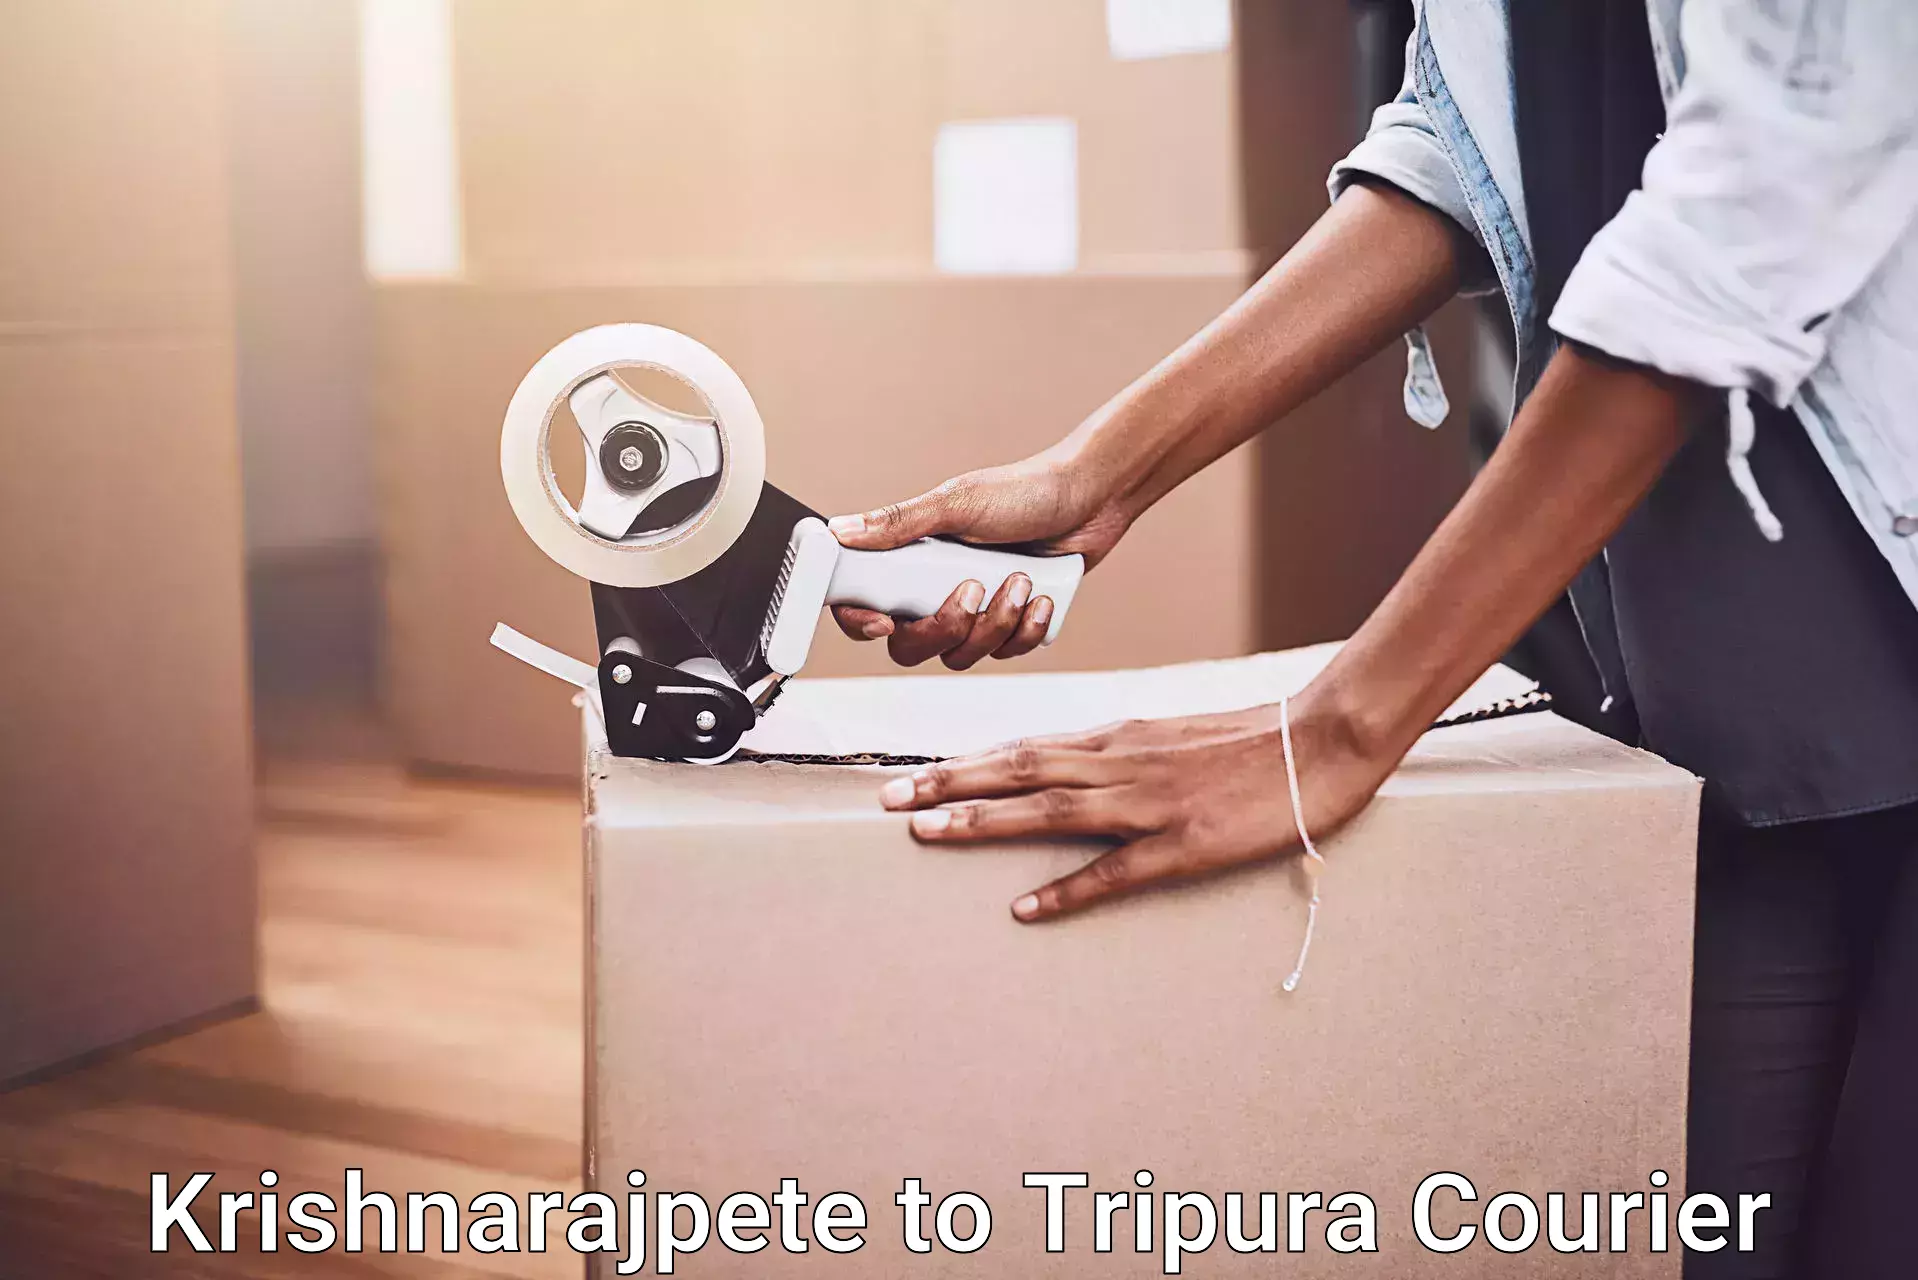 Skilled movers Krishnarajpete to Udaipur Tripura